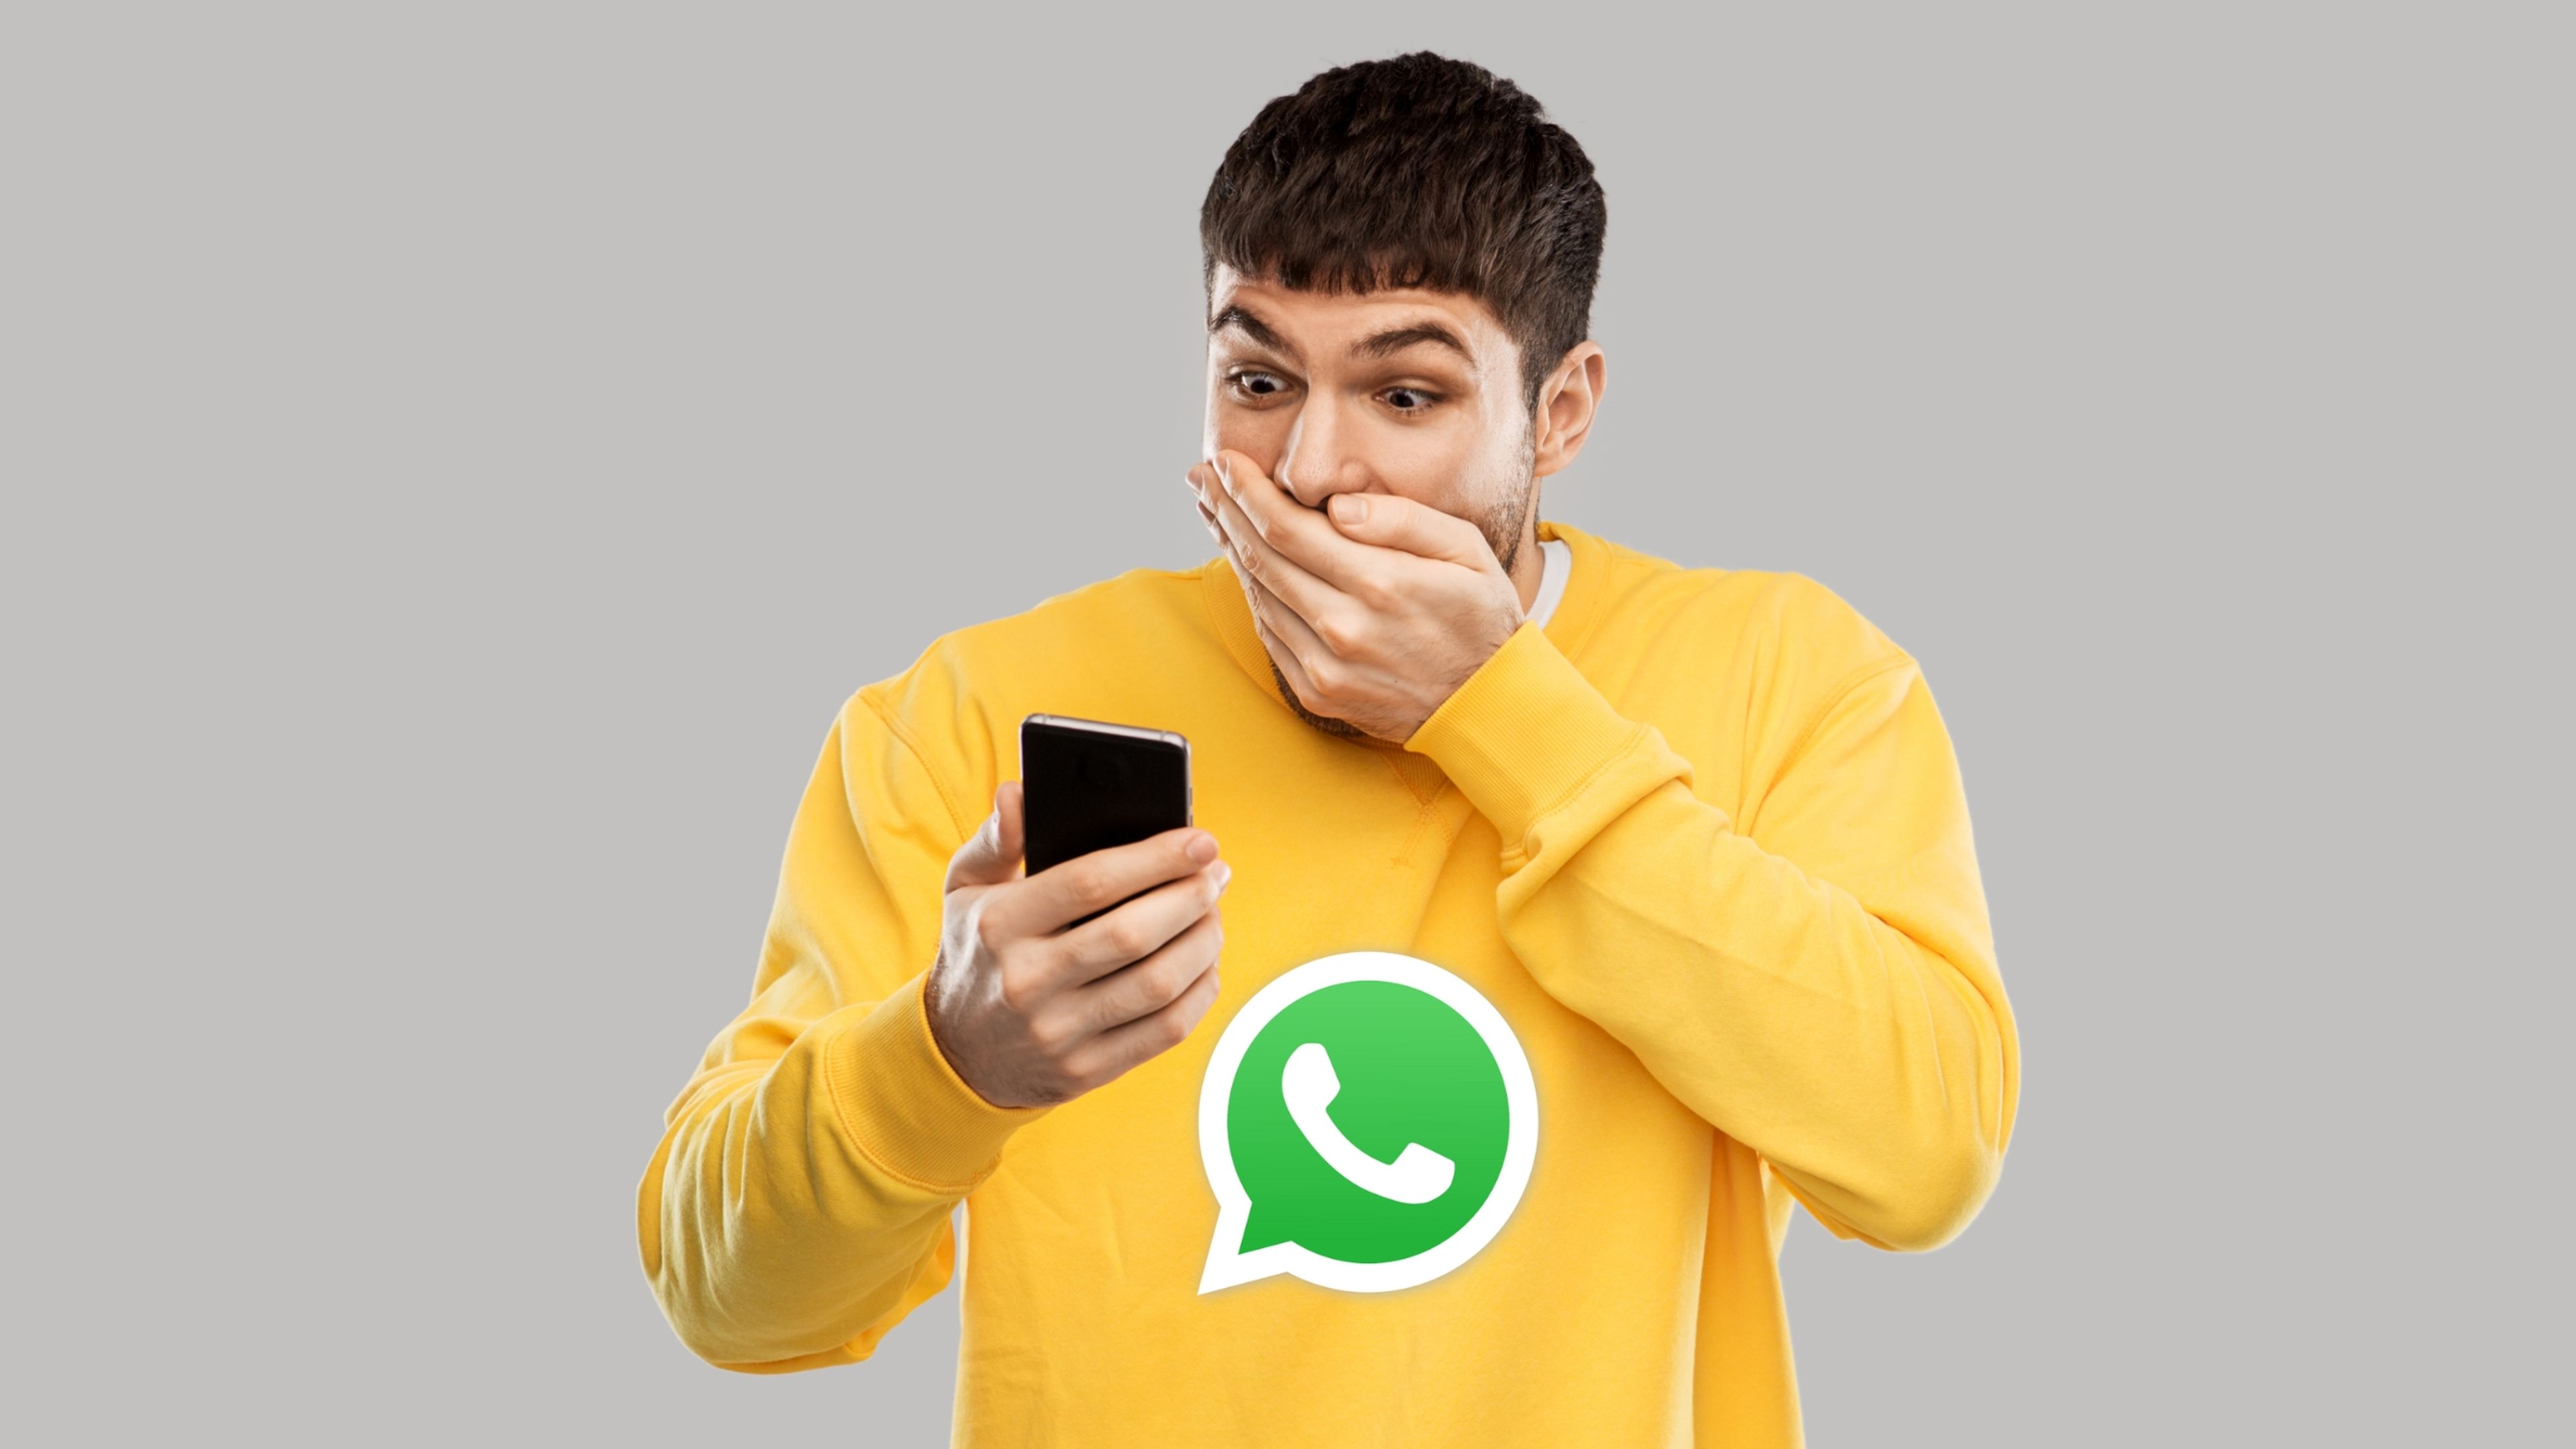 La función para enviar mensajes de audio en WhatsApp "sin manos" que sorprendentemente casi nadie conoce